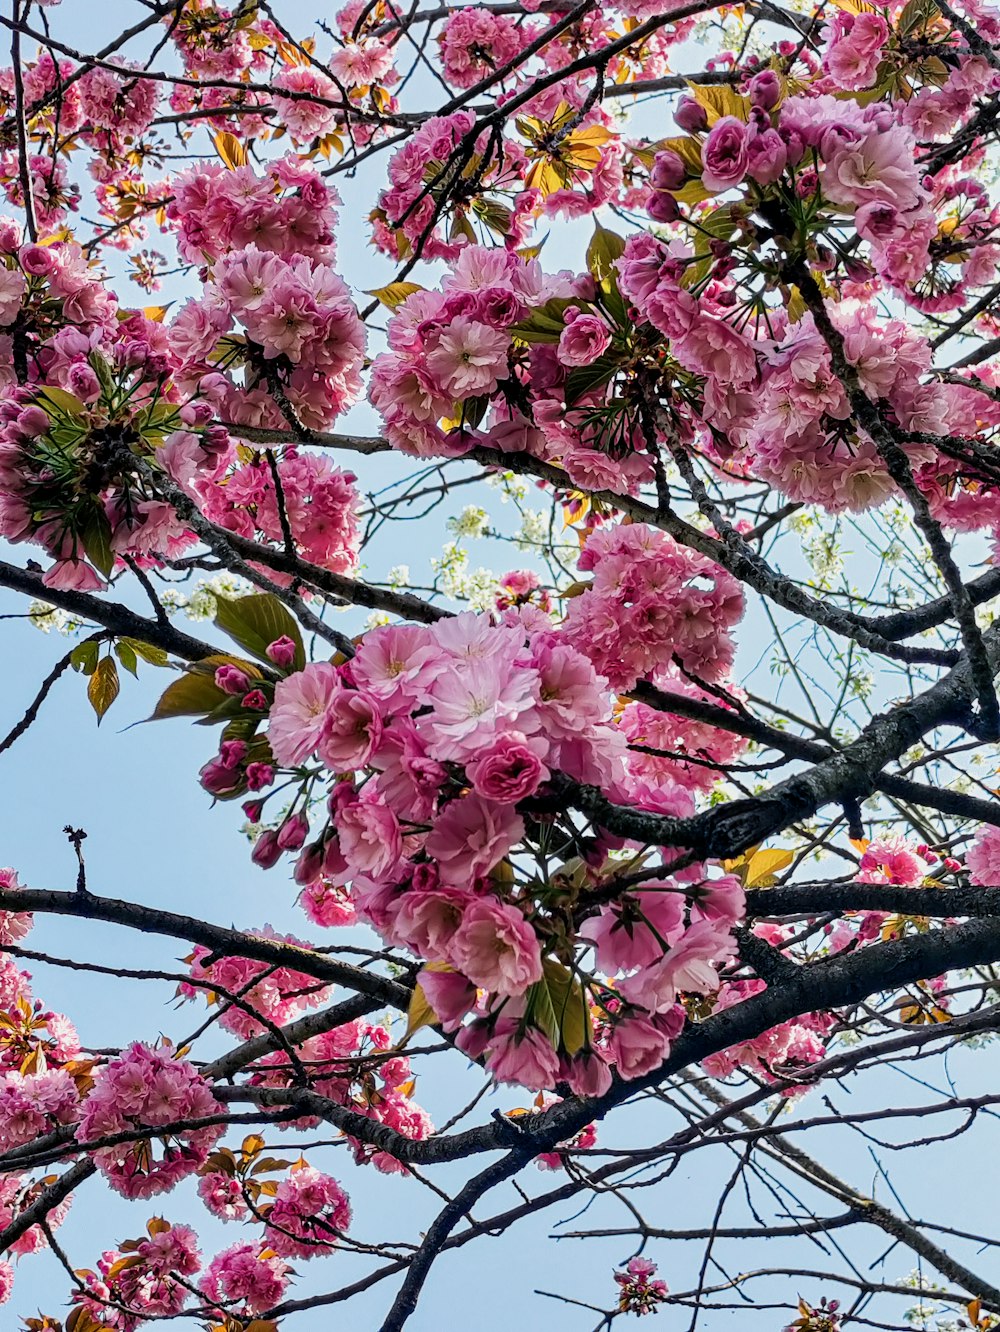 albero di ciliegio rosa in fiore durante il giorno